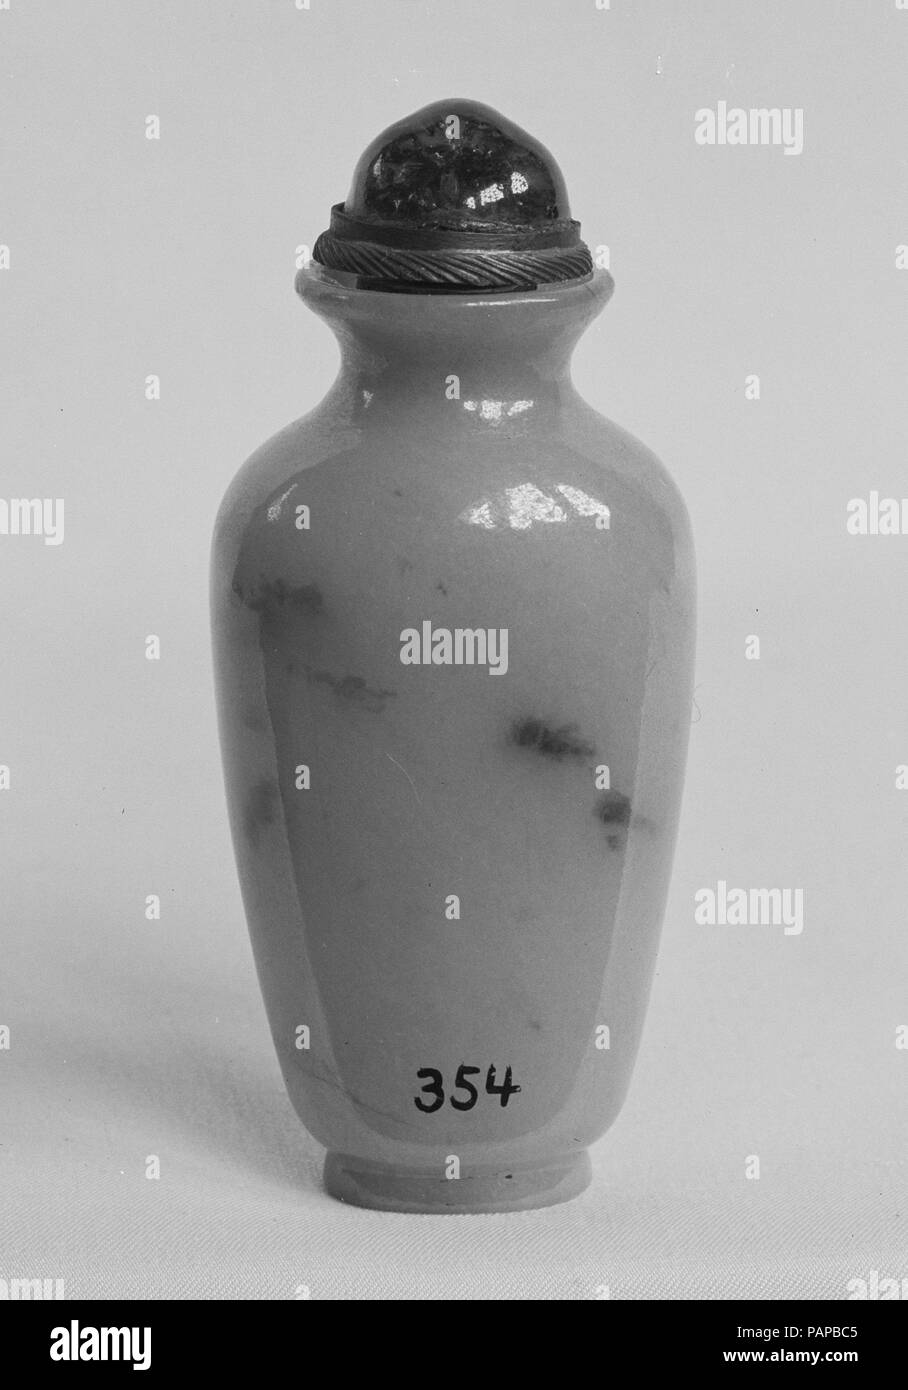 Schnupftabak Flasche. Kultur: China. Abmessungen: H. inkl. Top 2 3/4 in. (7 cm); H. w/o Top 2 3/8 in. (6 cm); W. 1 1/8 in. (2,9 cm); D. 7/8 in. (2.2 cm). Museum: Metropolitan Museum of Art, New York, USA. Stockfoto